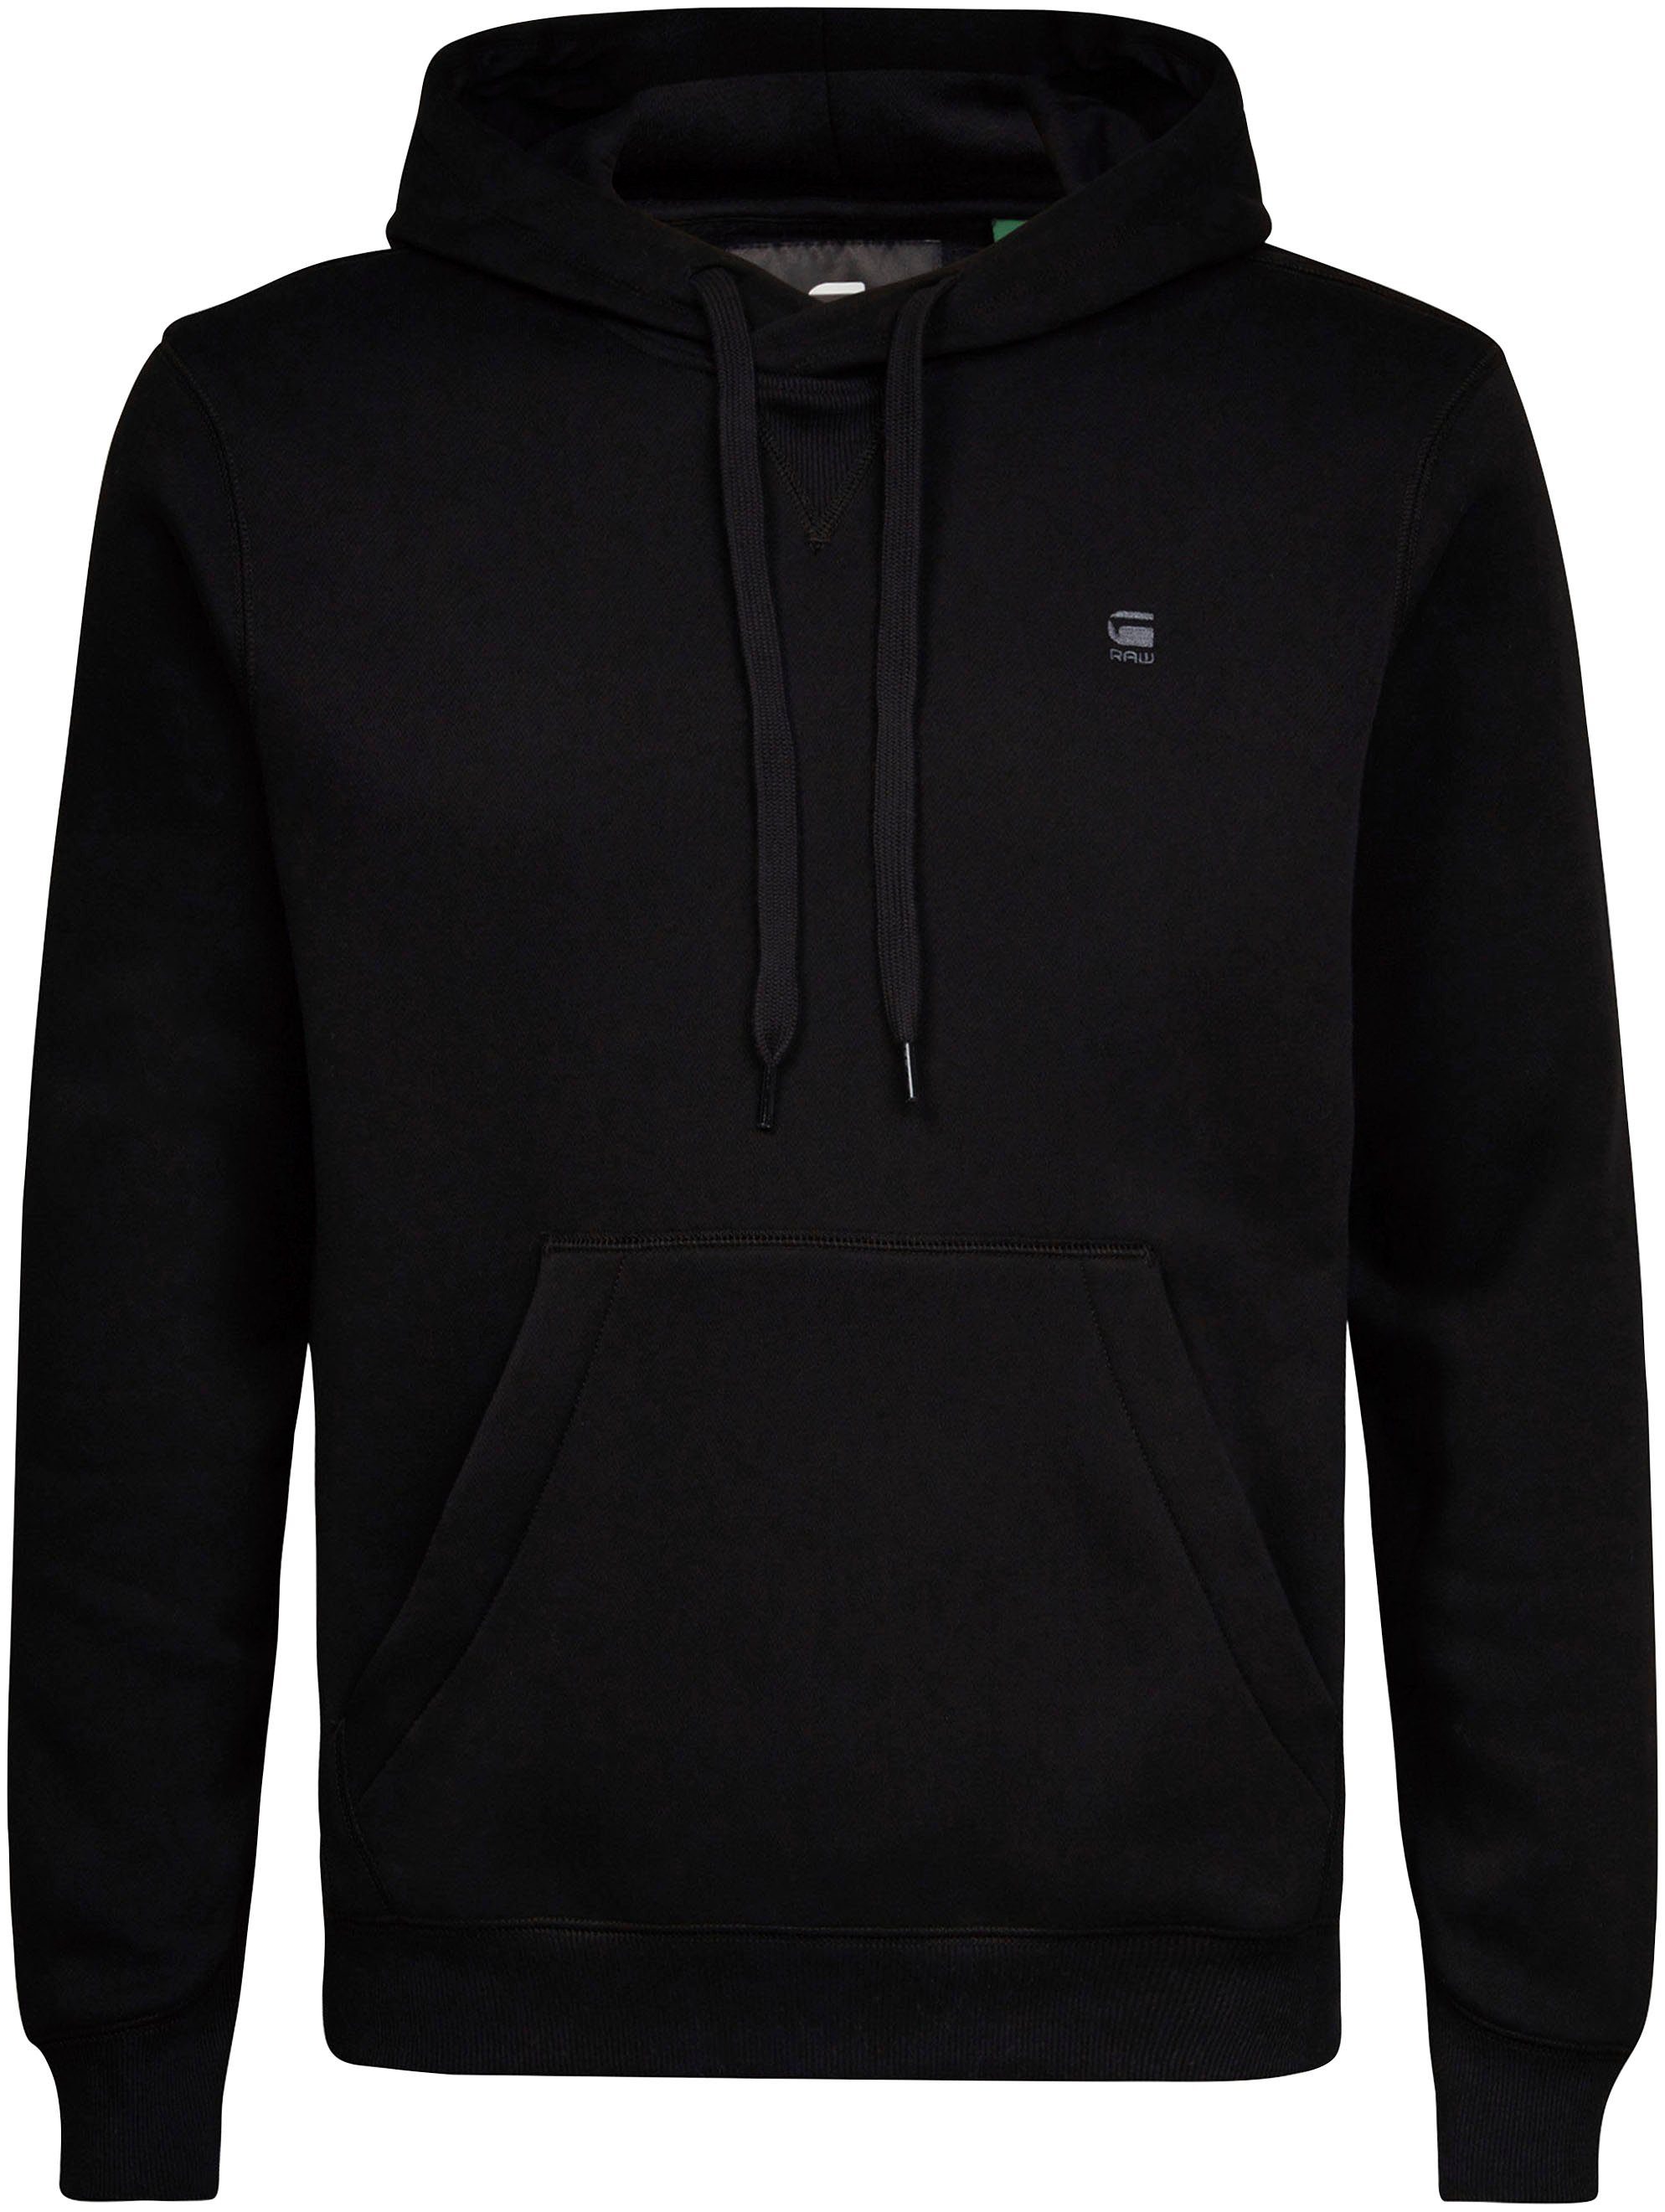 schwarz Hoody Kapuzensweatshirt Premium RAW G-Star